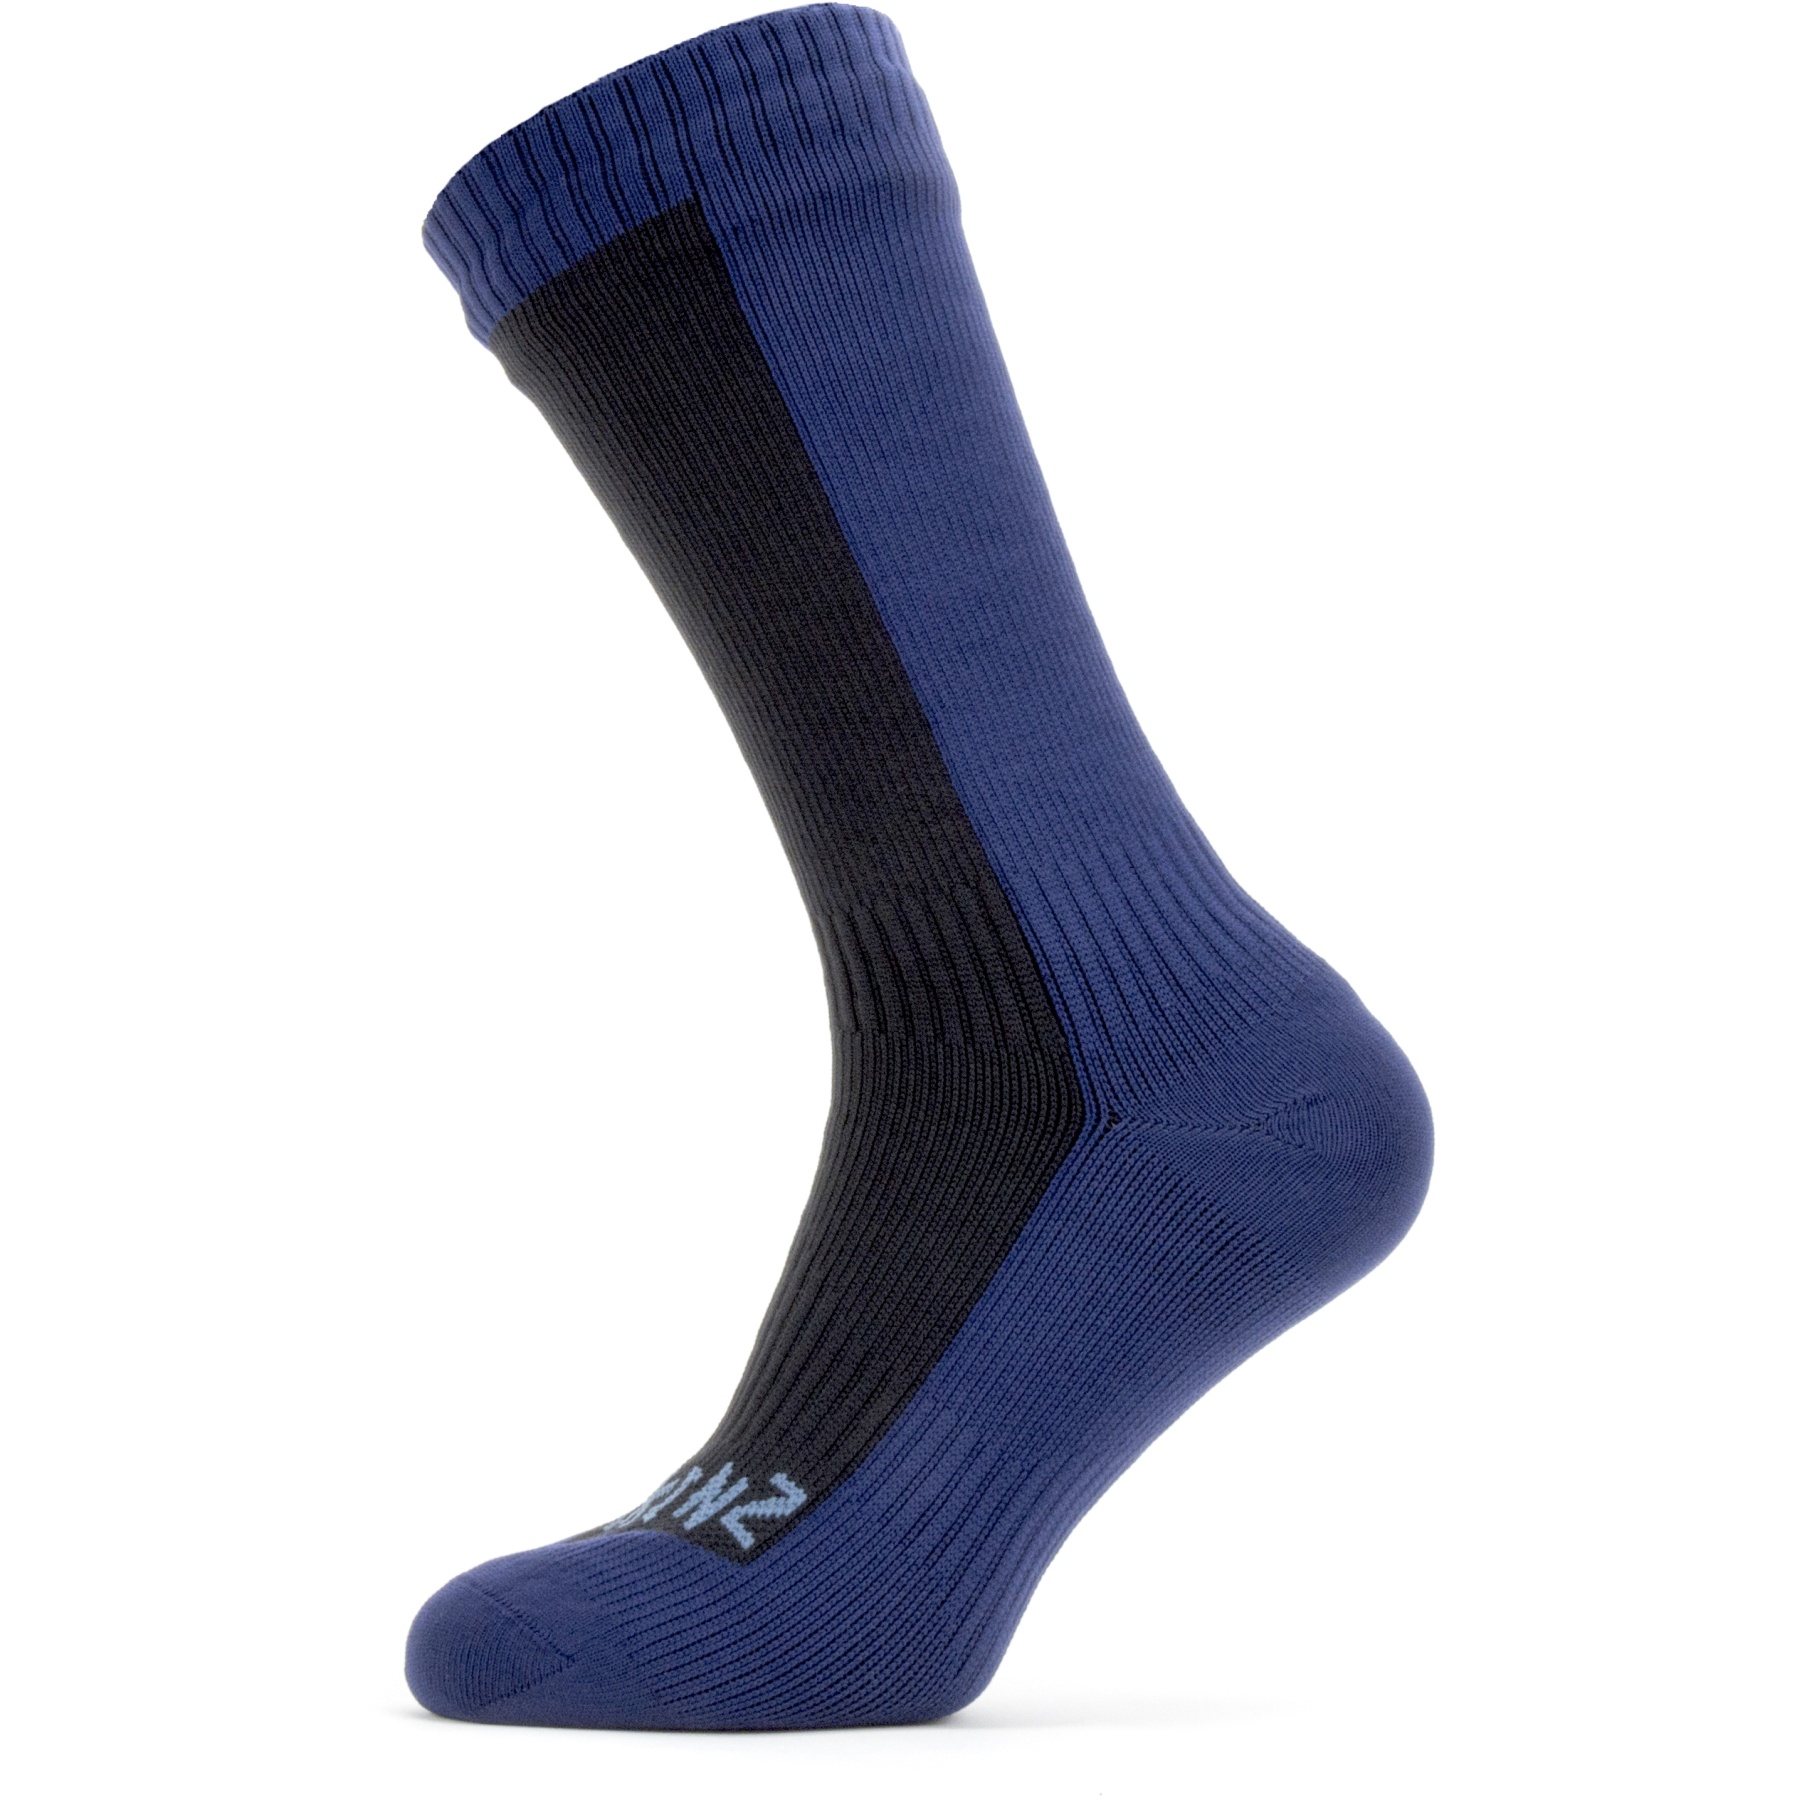 Productfoto van SealSkinz Starston Waterdichte Halflange Sokken Voor Koud Weer - Black/Navy Blue